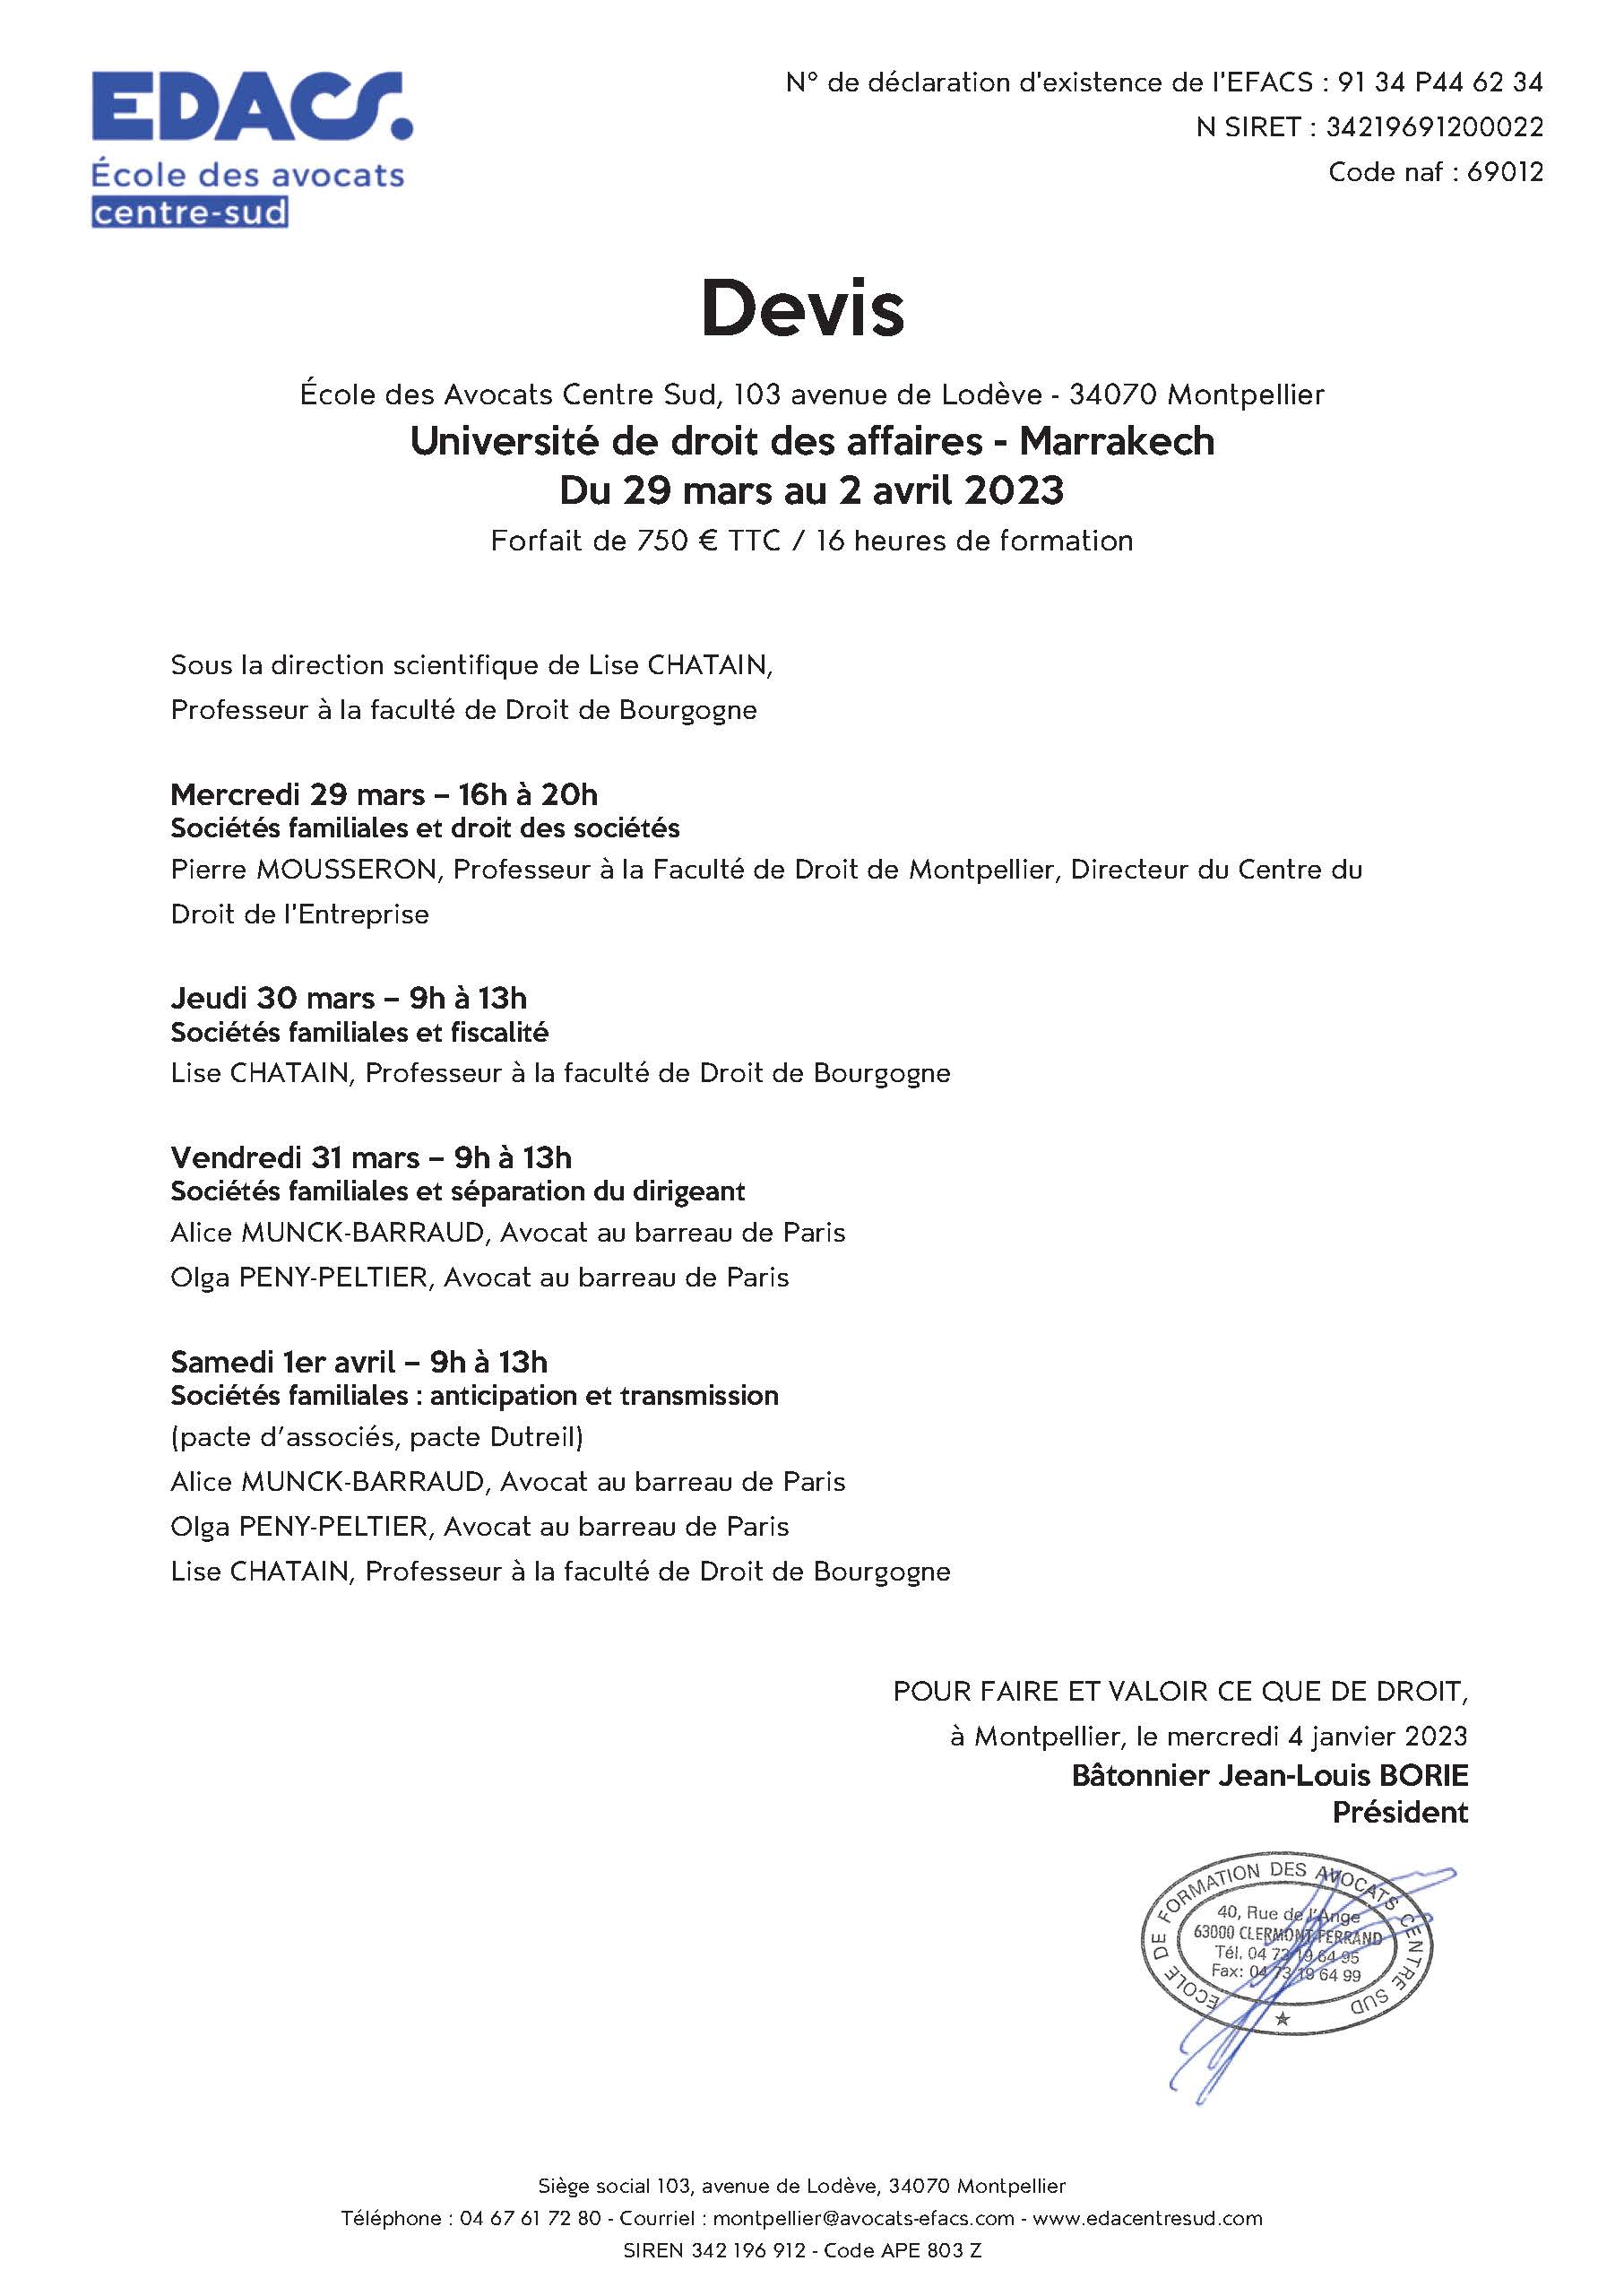 EDACS - Universités de droit des affaires à Marrakech du 29 mars au 2 avril 2023